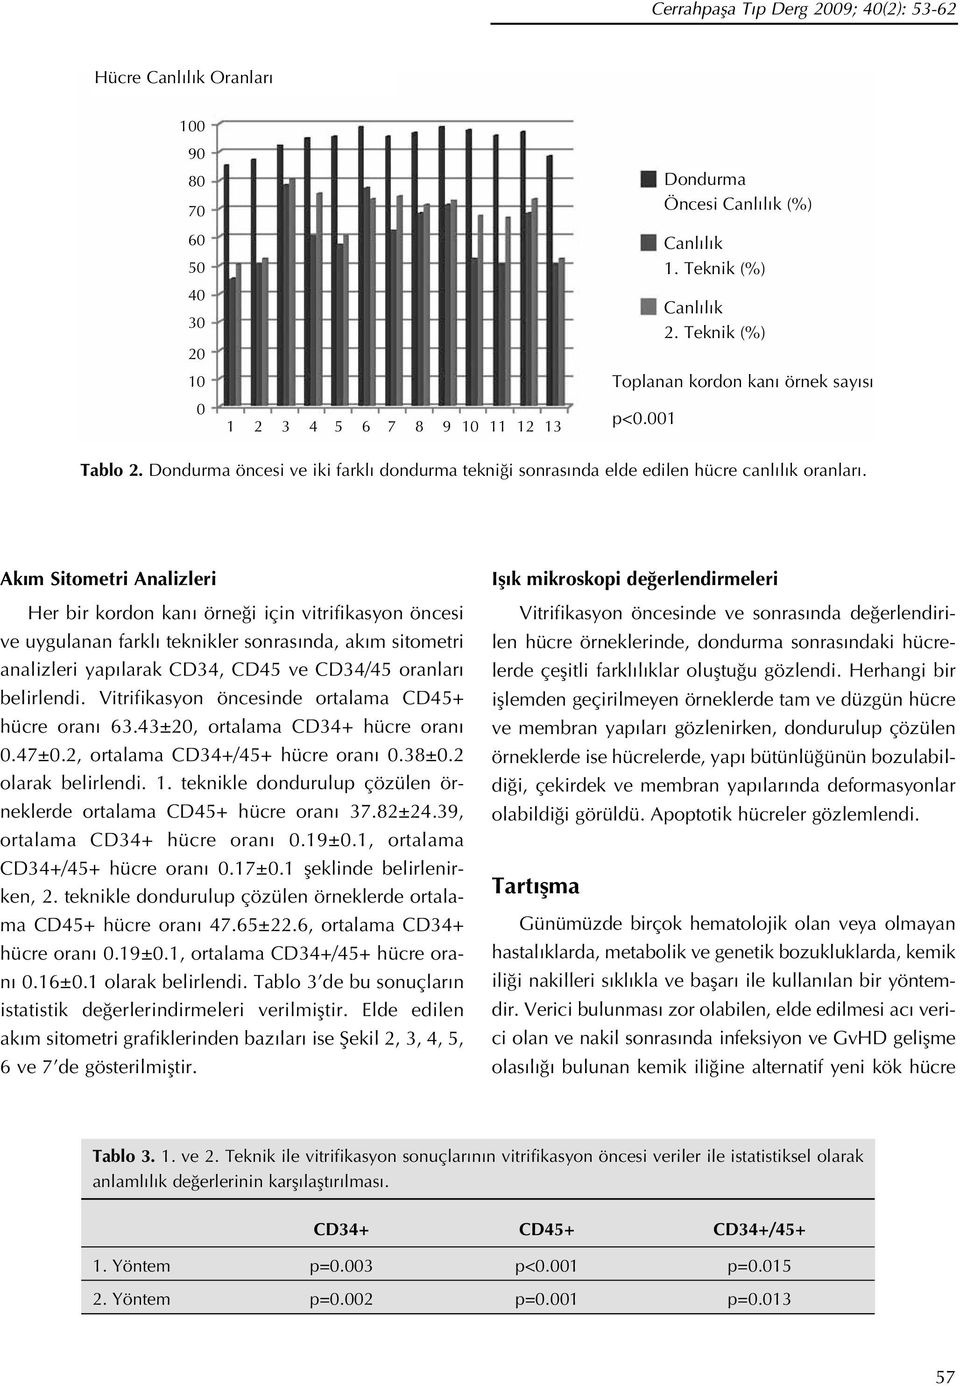 Ak m Sitometri Analizleri Her bir kordon kan örne i için vitrifikasyon öncesi ve uygulanan farkl teknikler sonras nda, ak m sitometri analizleri yap larak CD34, CD45 ve CD34/45 oranlar belirlendi.